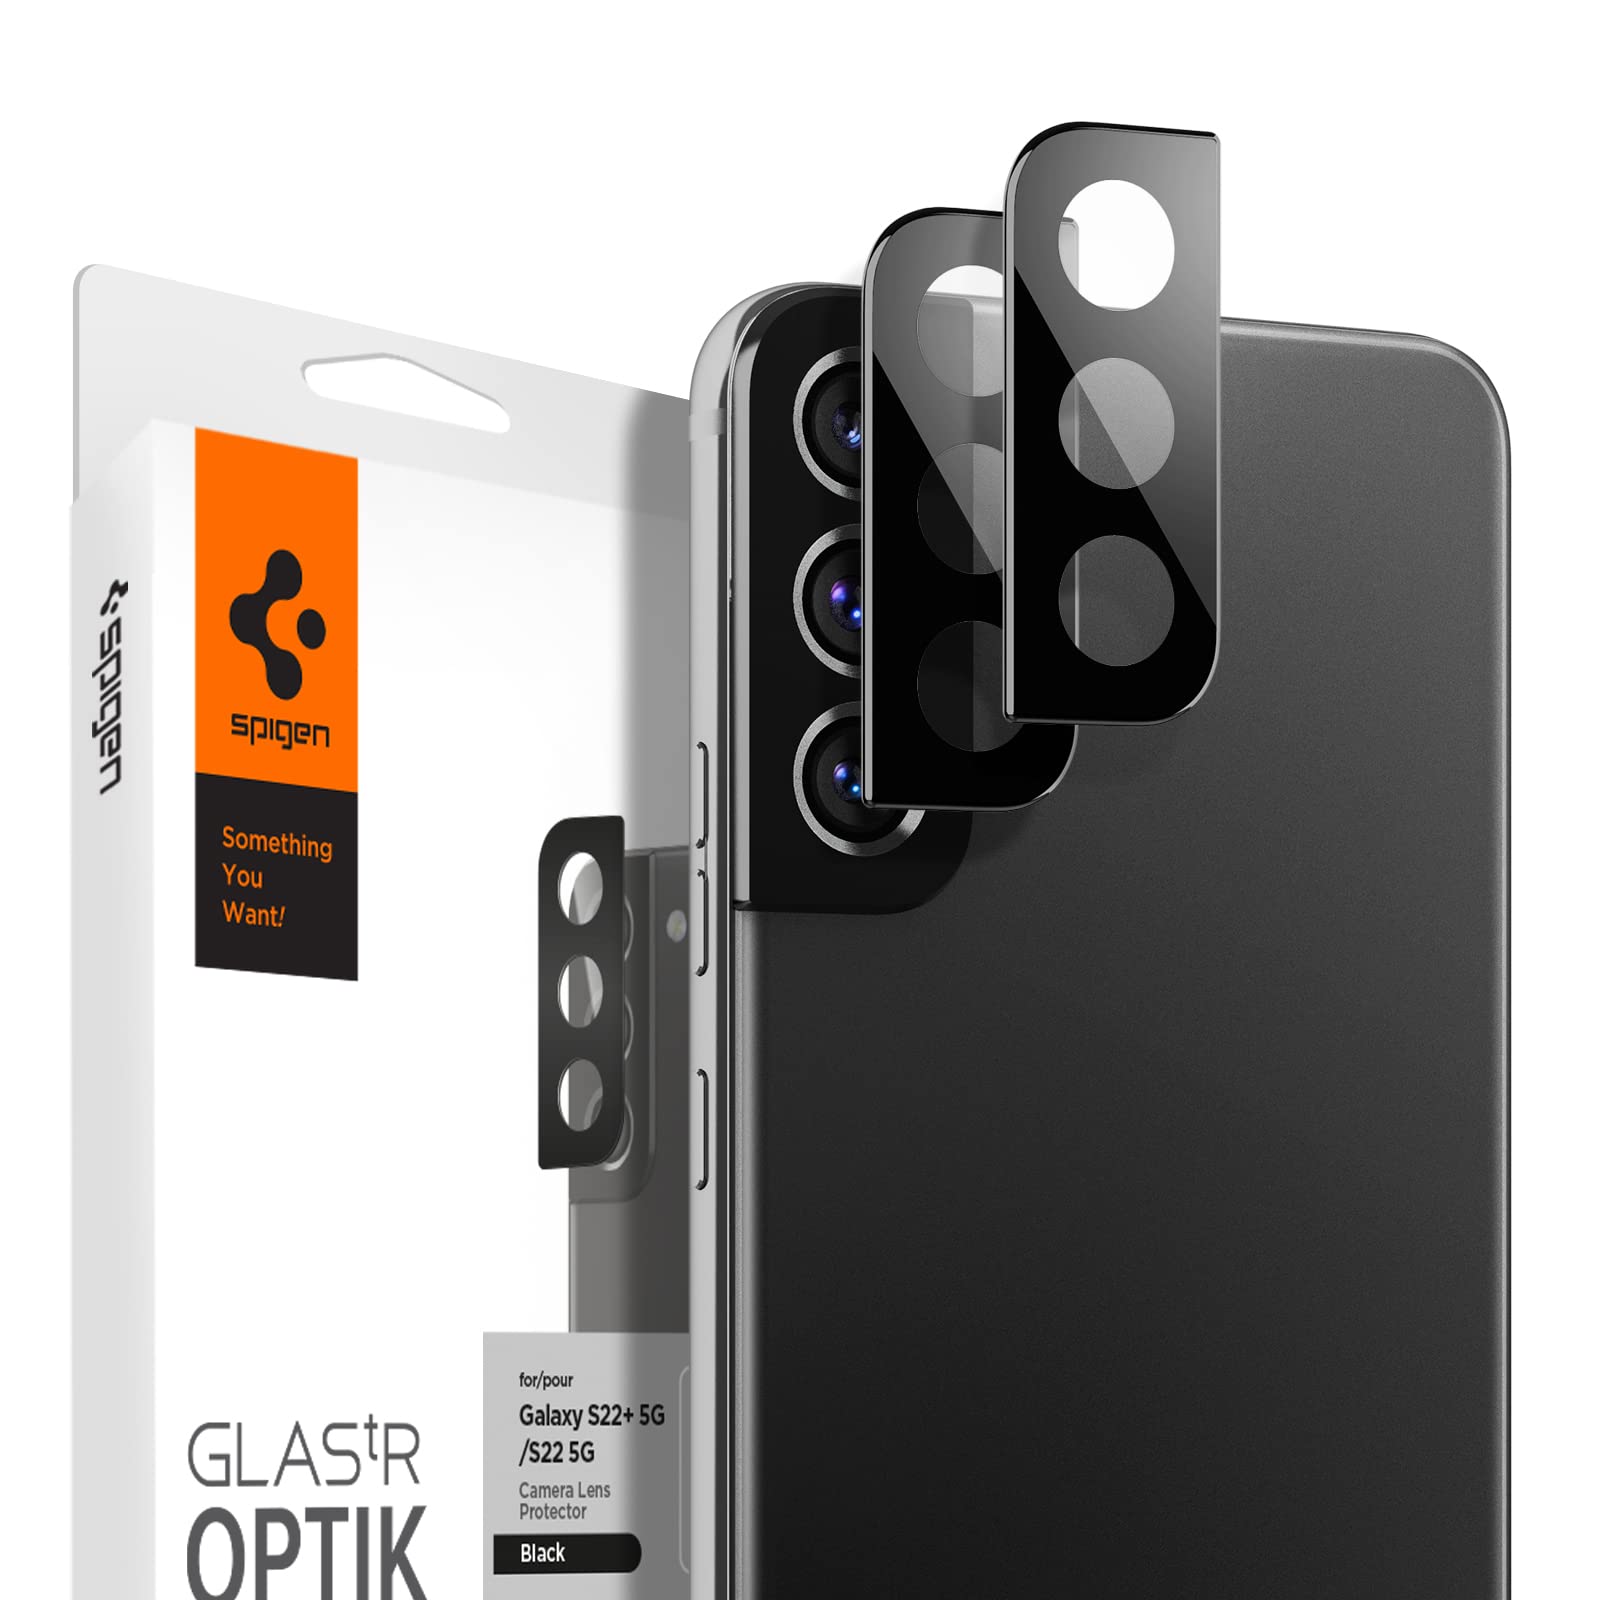 Spigen Glas tR Optik Galaxy S22 と Galaxy S22 Plus 用 カメラフィルム 保護 ギャラクシー S22 と S22 plus 対応 カメラ レンズ ブラッ